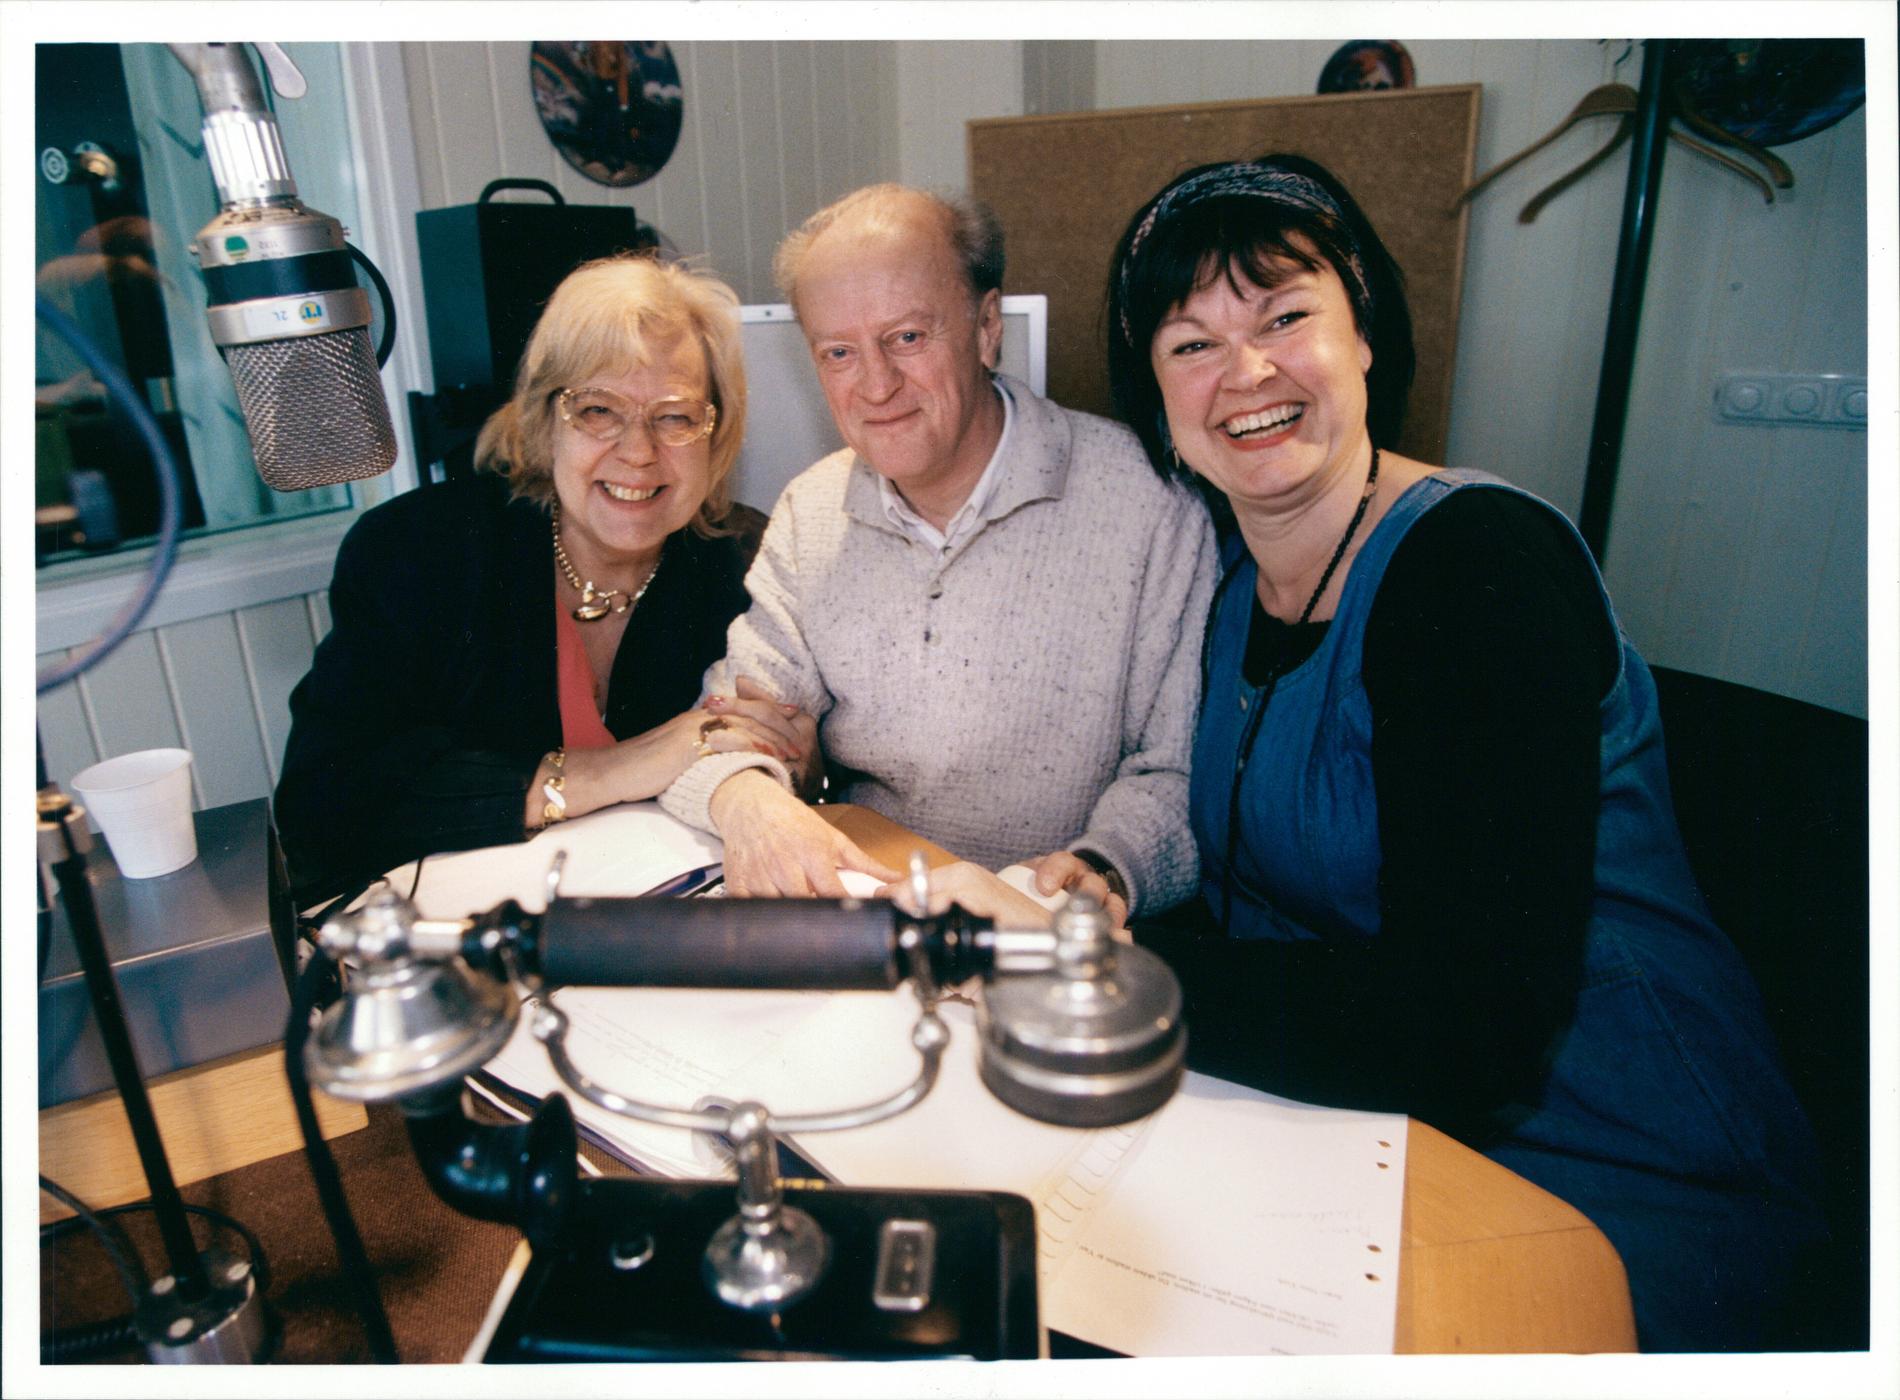  Mona Krantz och Thord Carlsson ledde radioprogrammet "Ring så spelar vi" från 1989 till 1996, då de båda gick i pension, här lämnar de över programmet till Lisa Syrén.